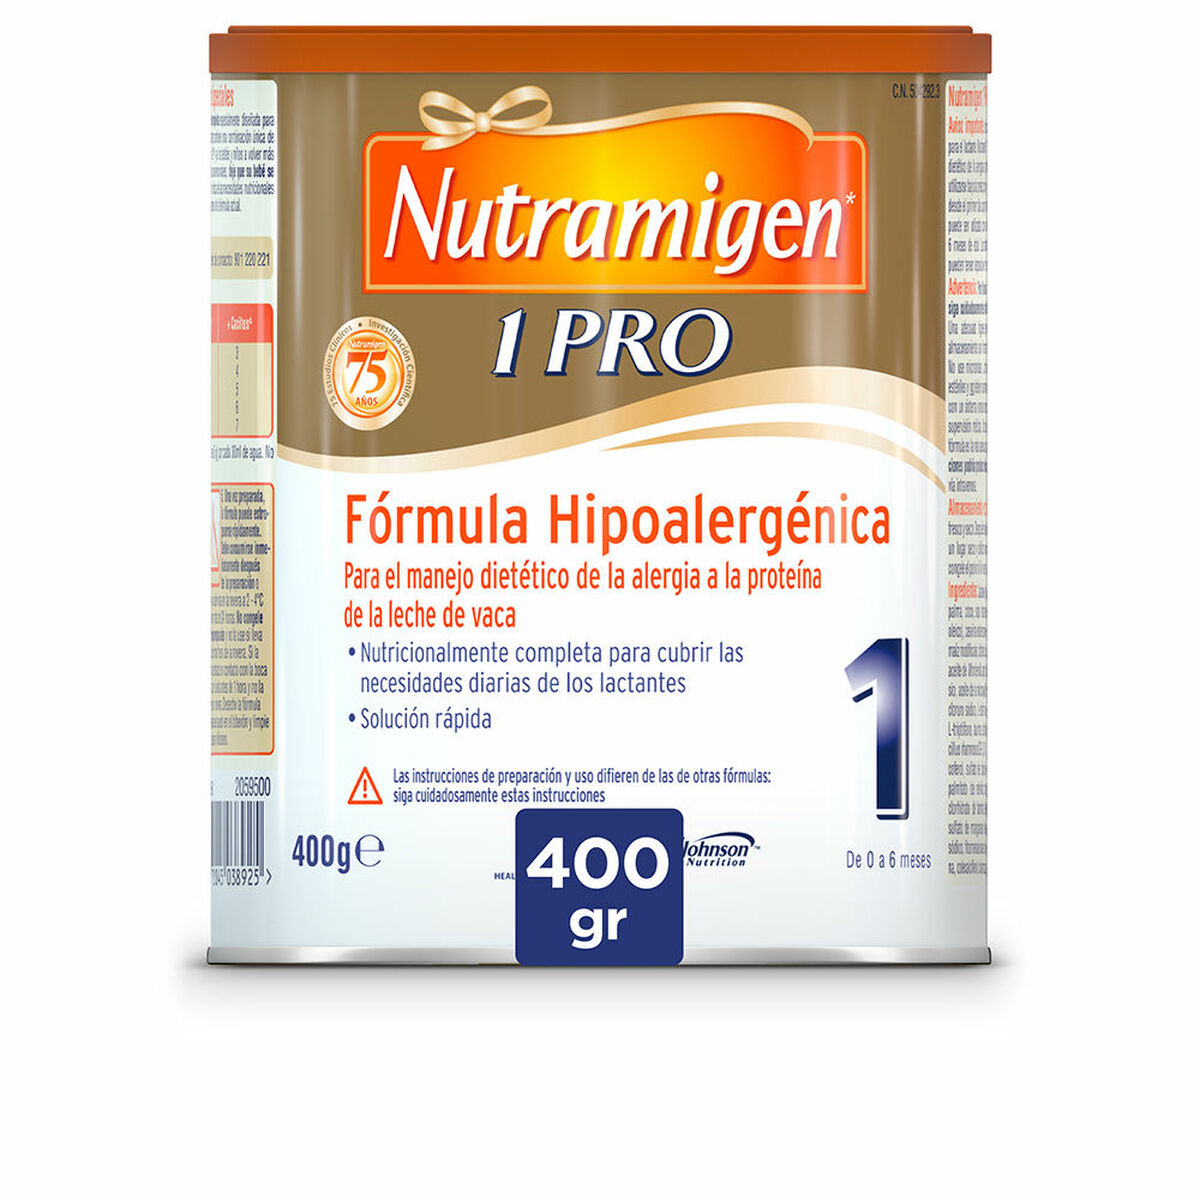 Powdered Milk Nutramigen Pro 400 g